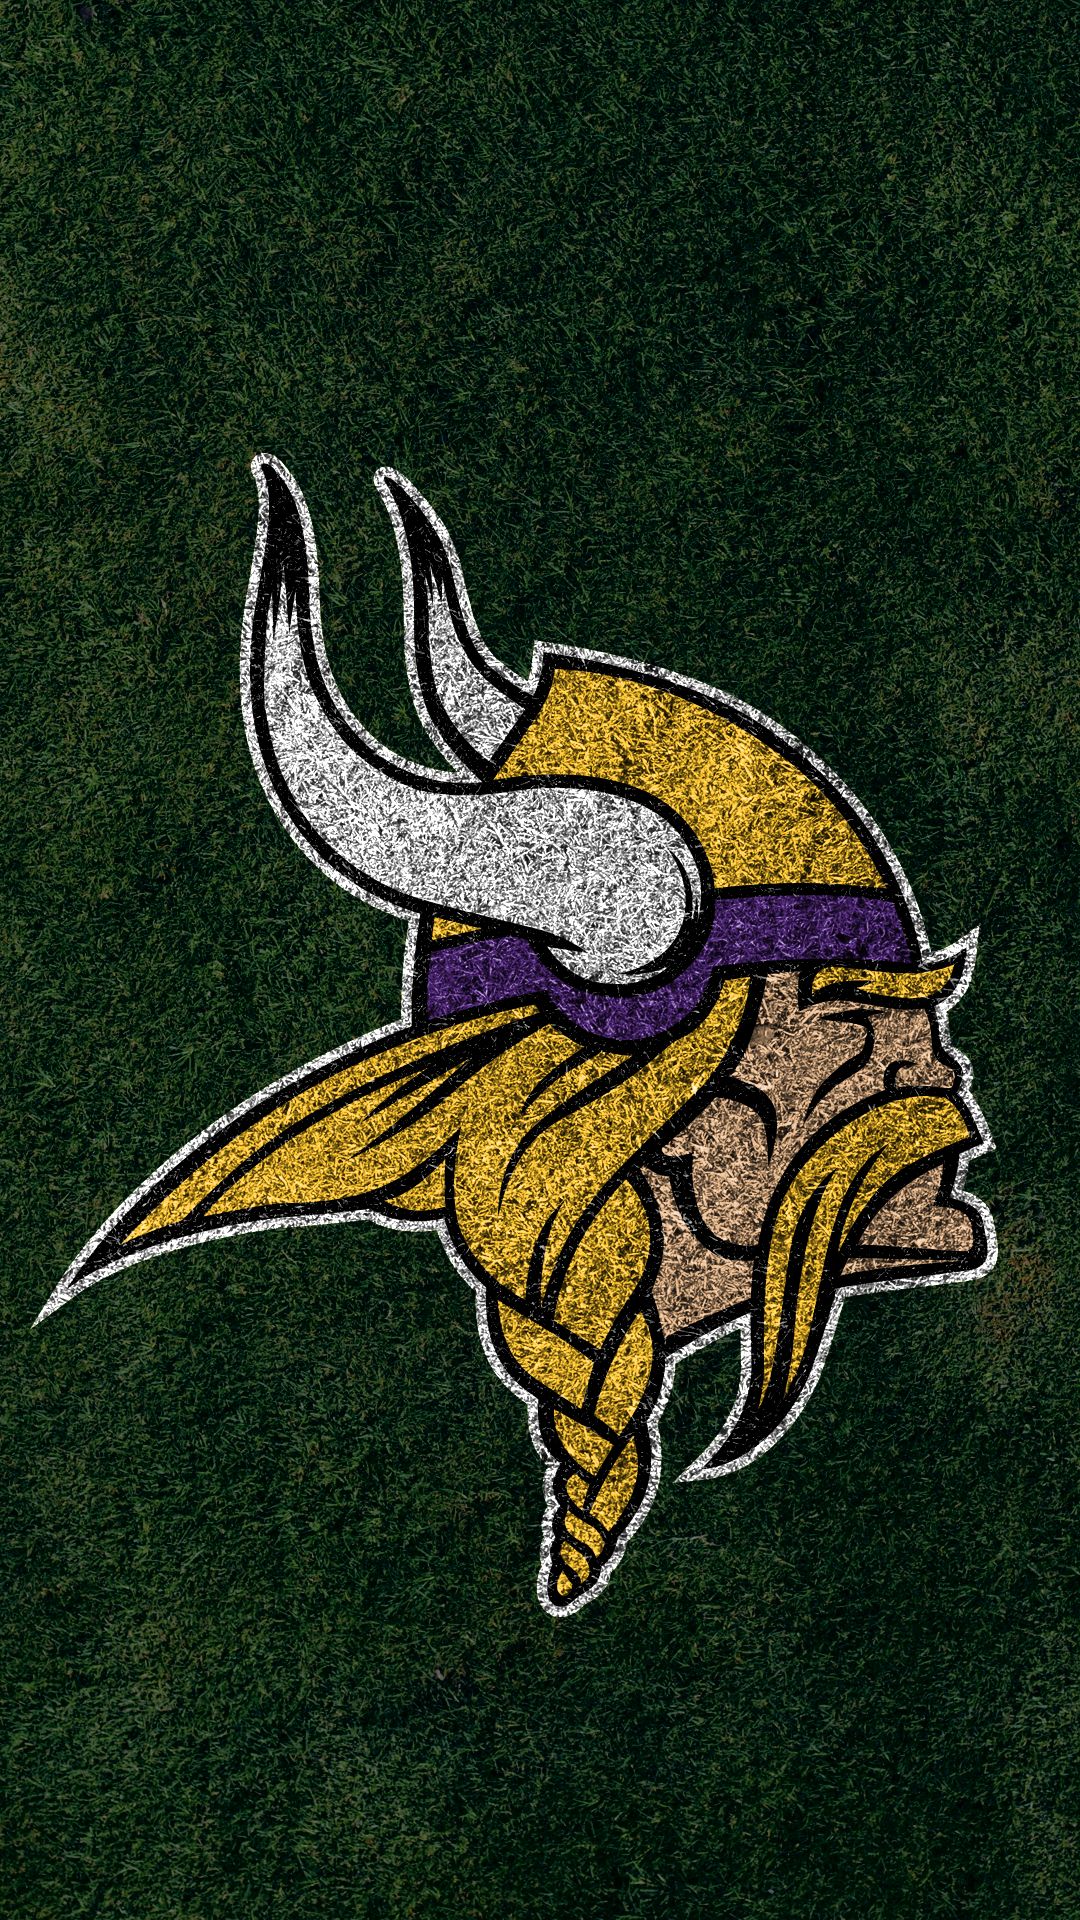 vikings football emblem